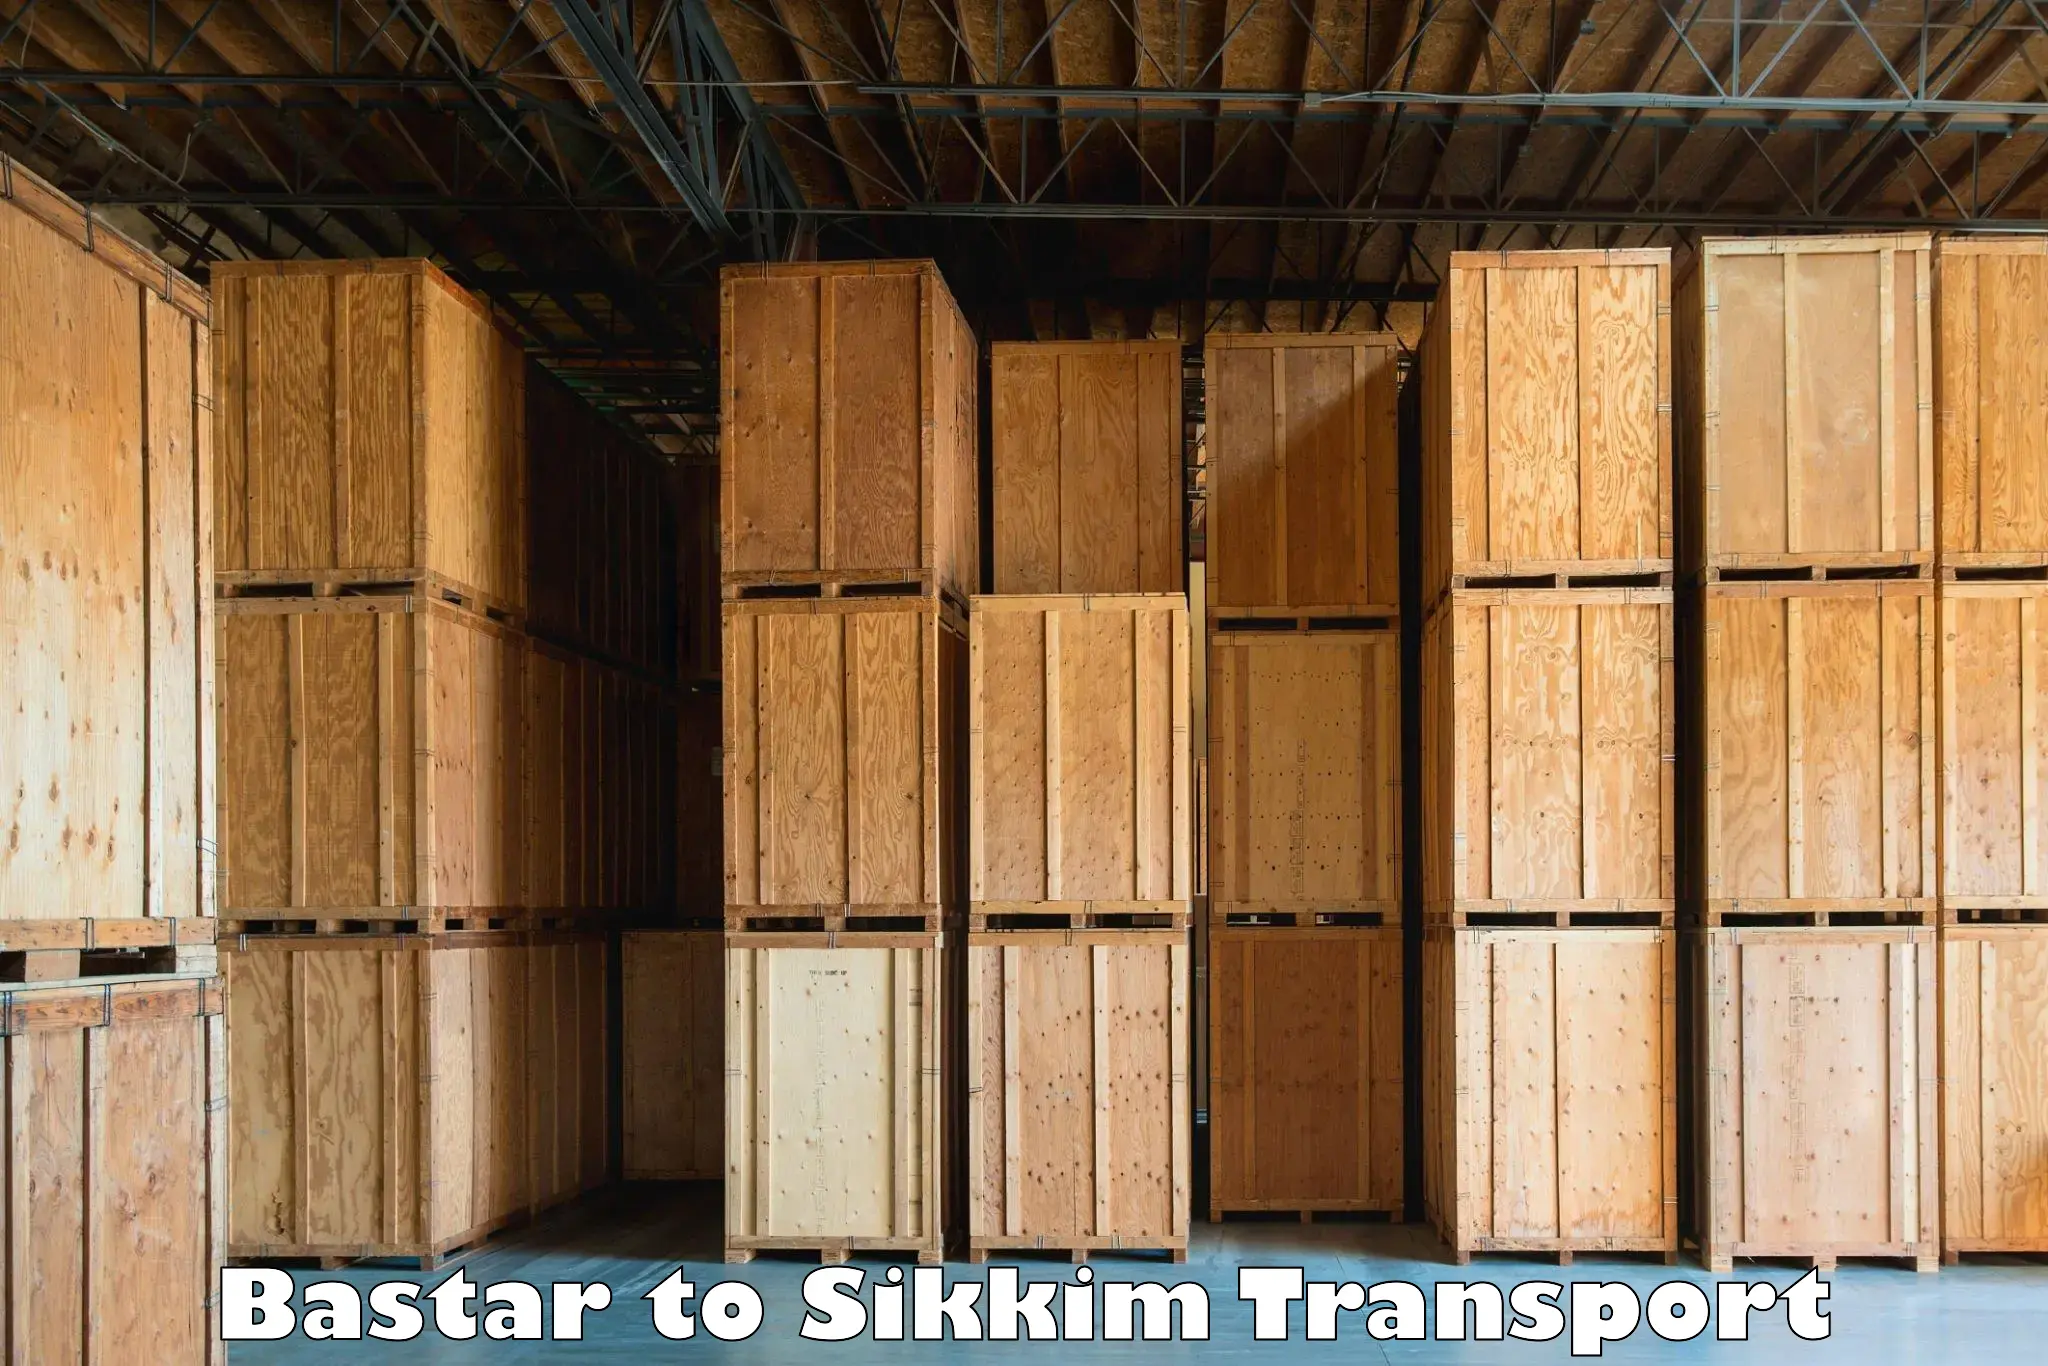 Online transport service Bastar to East Sikkim